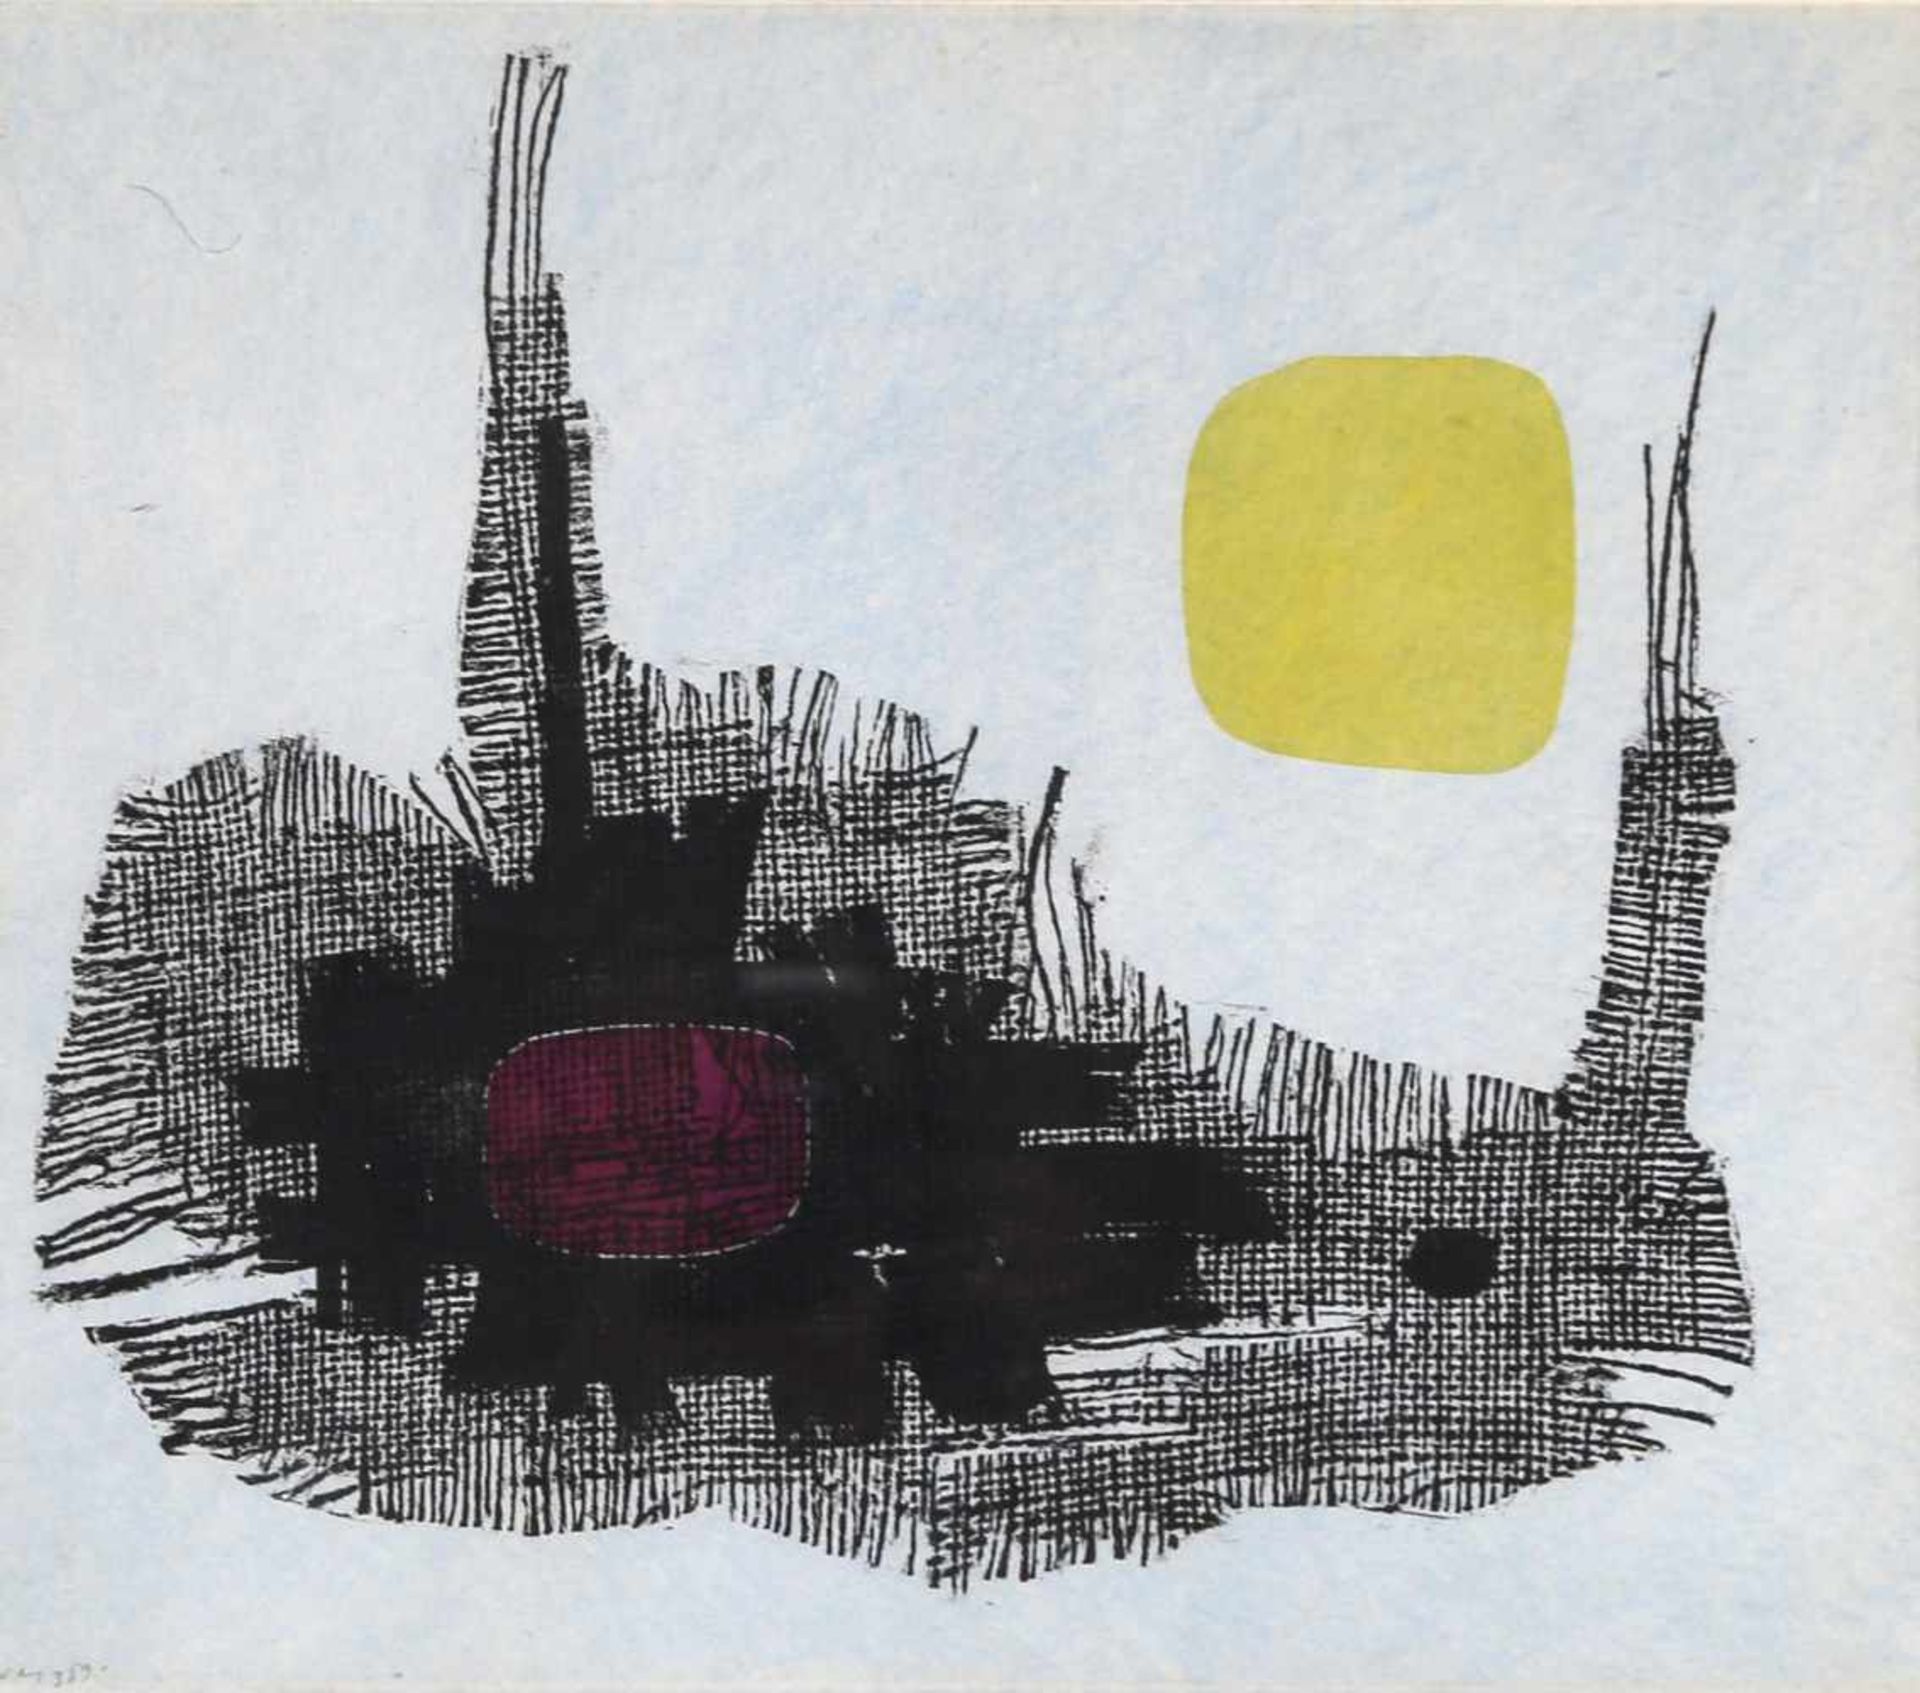 Hannes Schwarz (1926-2014)Nashorn, Farb-Lithographie, 1959, 38 x 33,3 cm, links unten mit